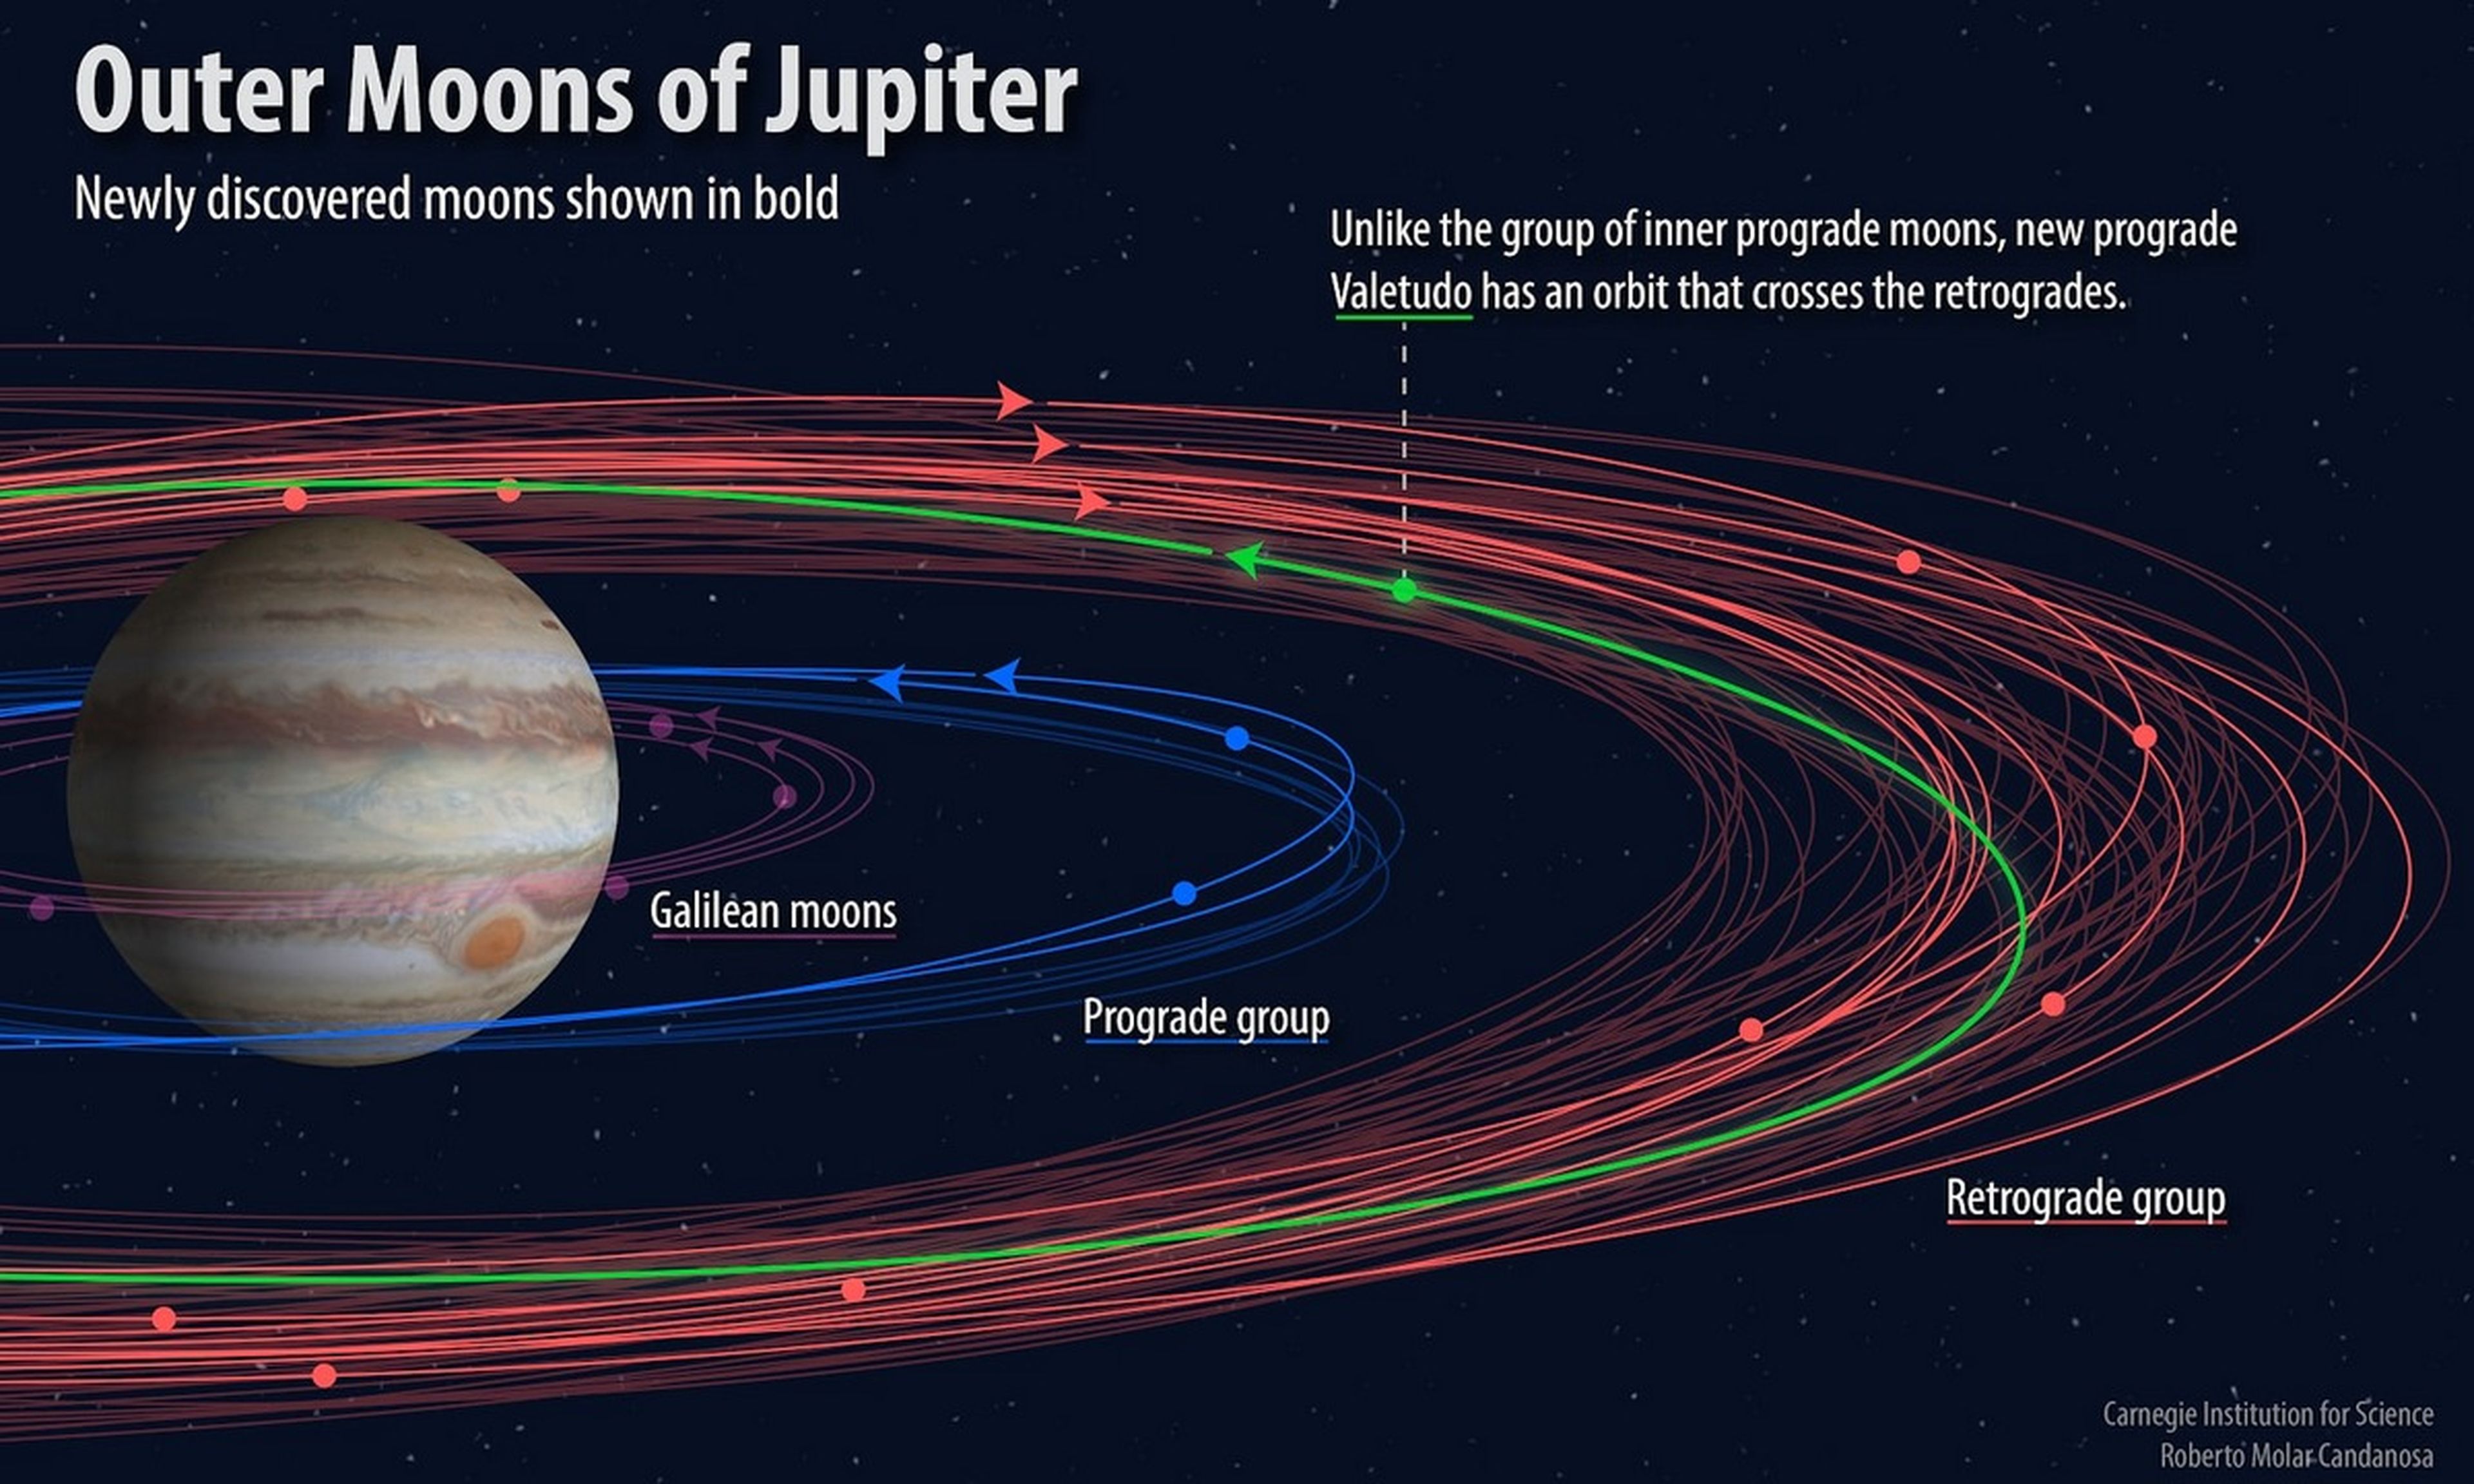 Descubiertas doce nuevas lunas en Júpiter, una de ellas suicida